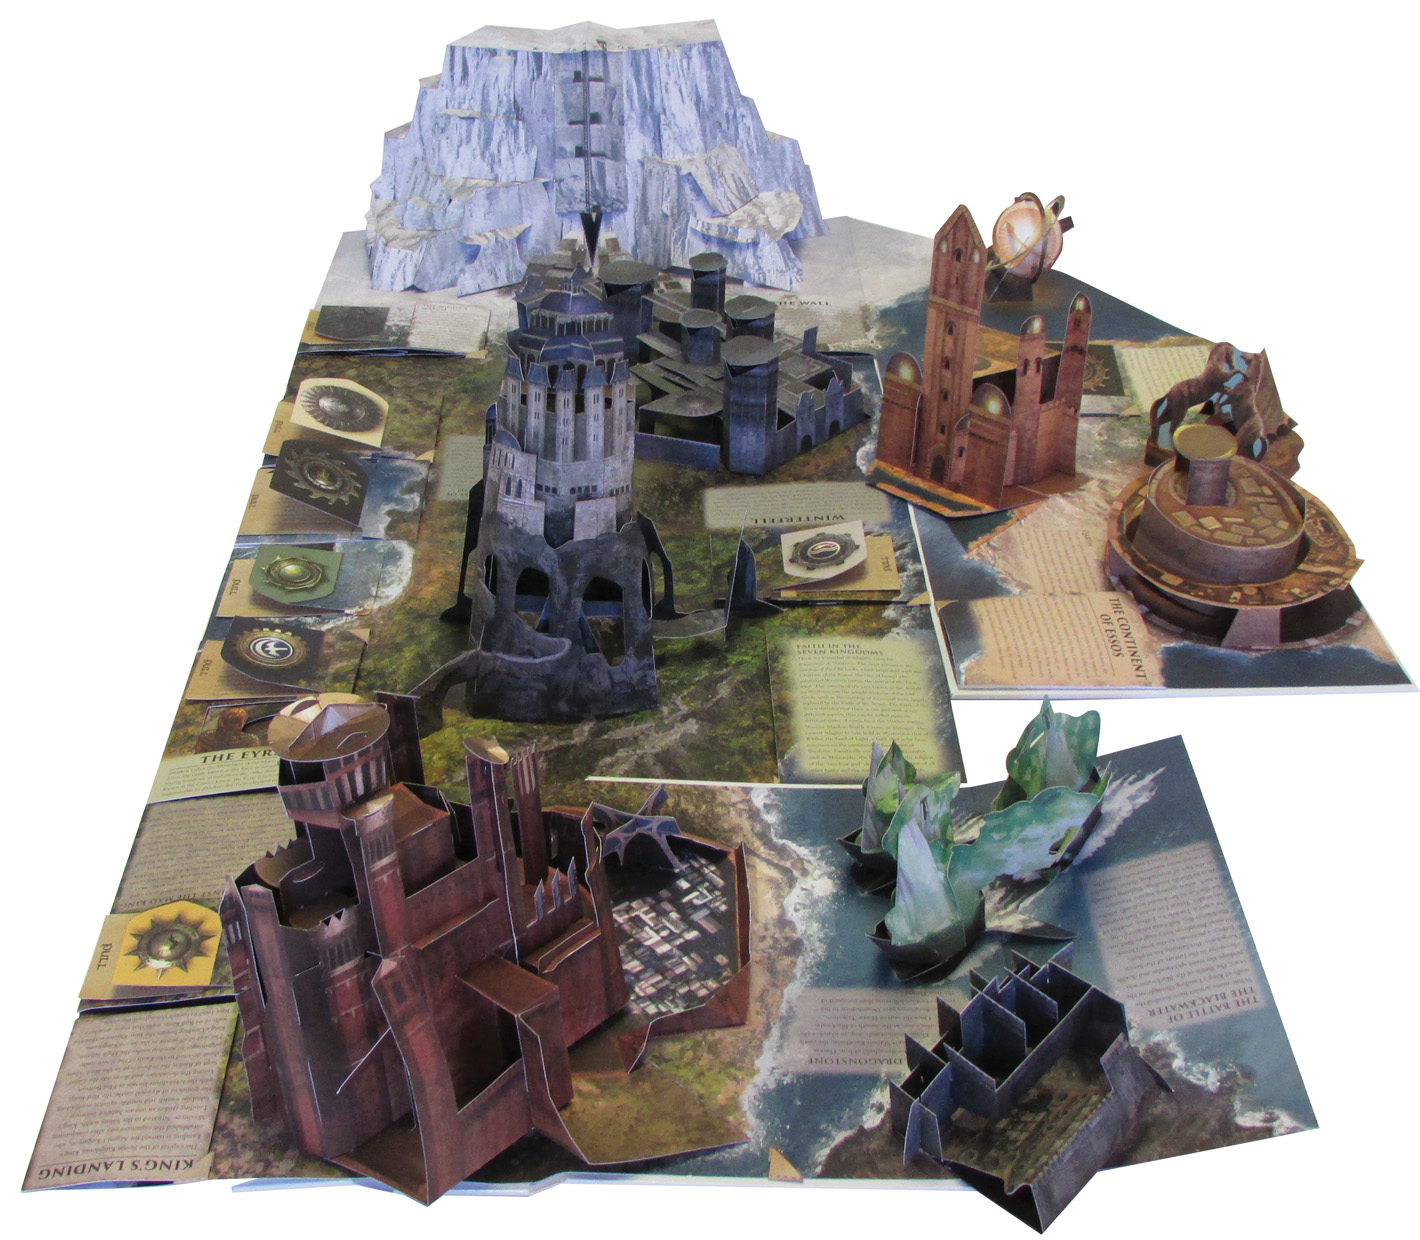 Игра престолов, Трехмерная карта Вестероса и Эссоса, вырастающие Замки  великих до... – купить в Москве, цены в интернет-магазинах на Мегамаркет